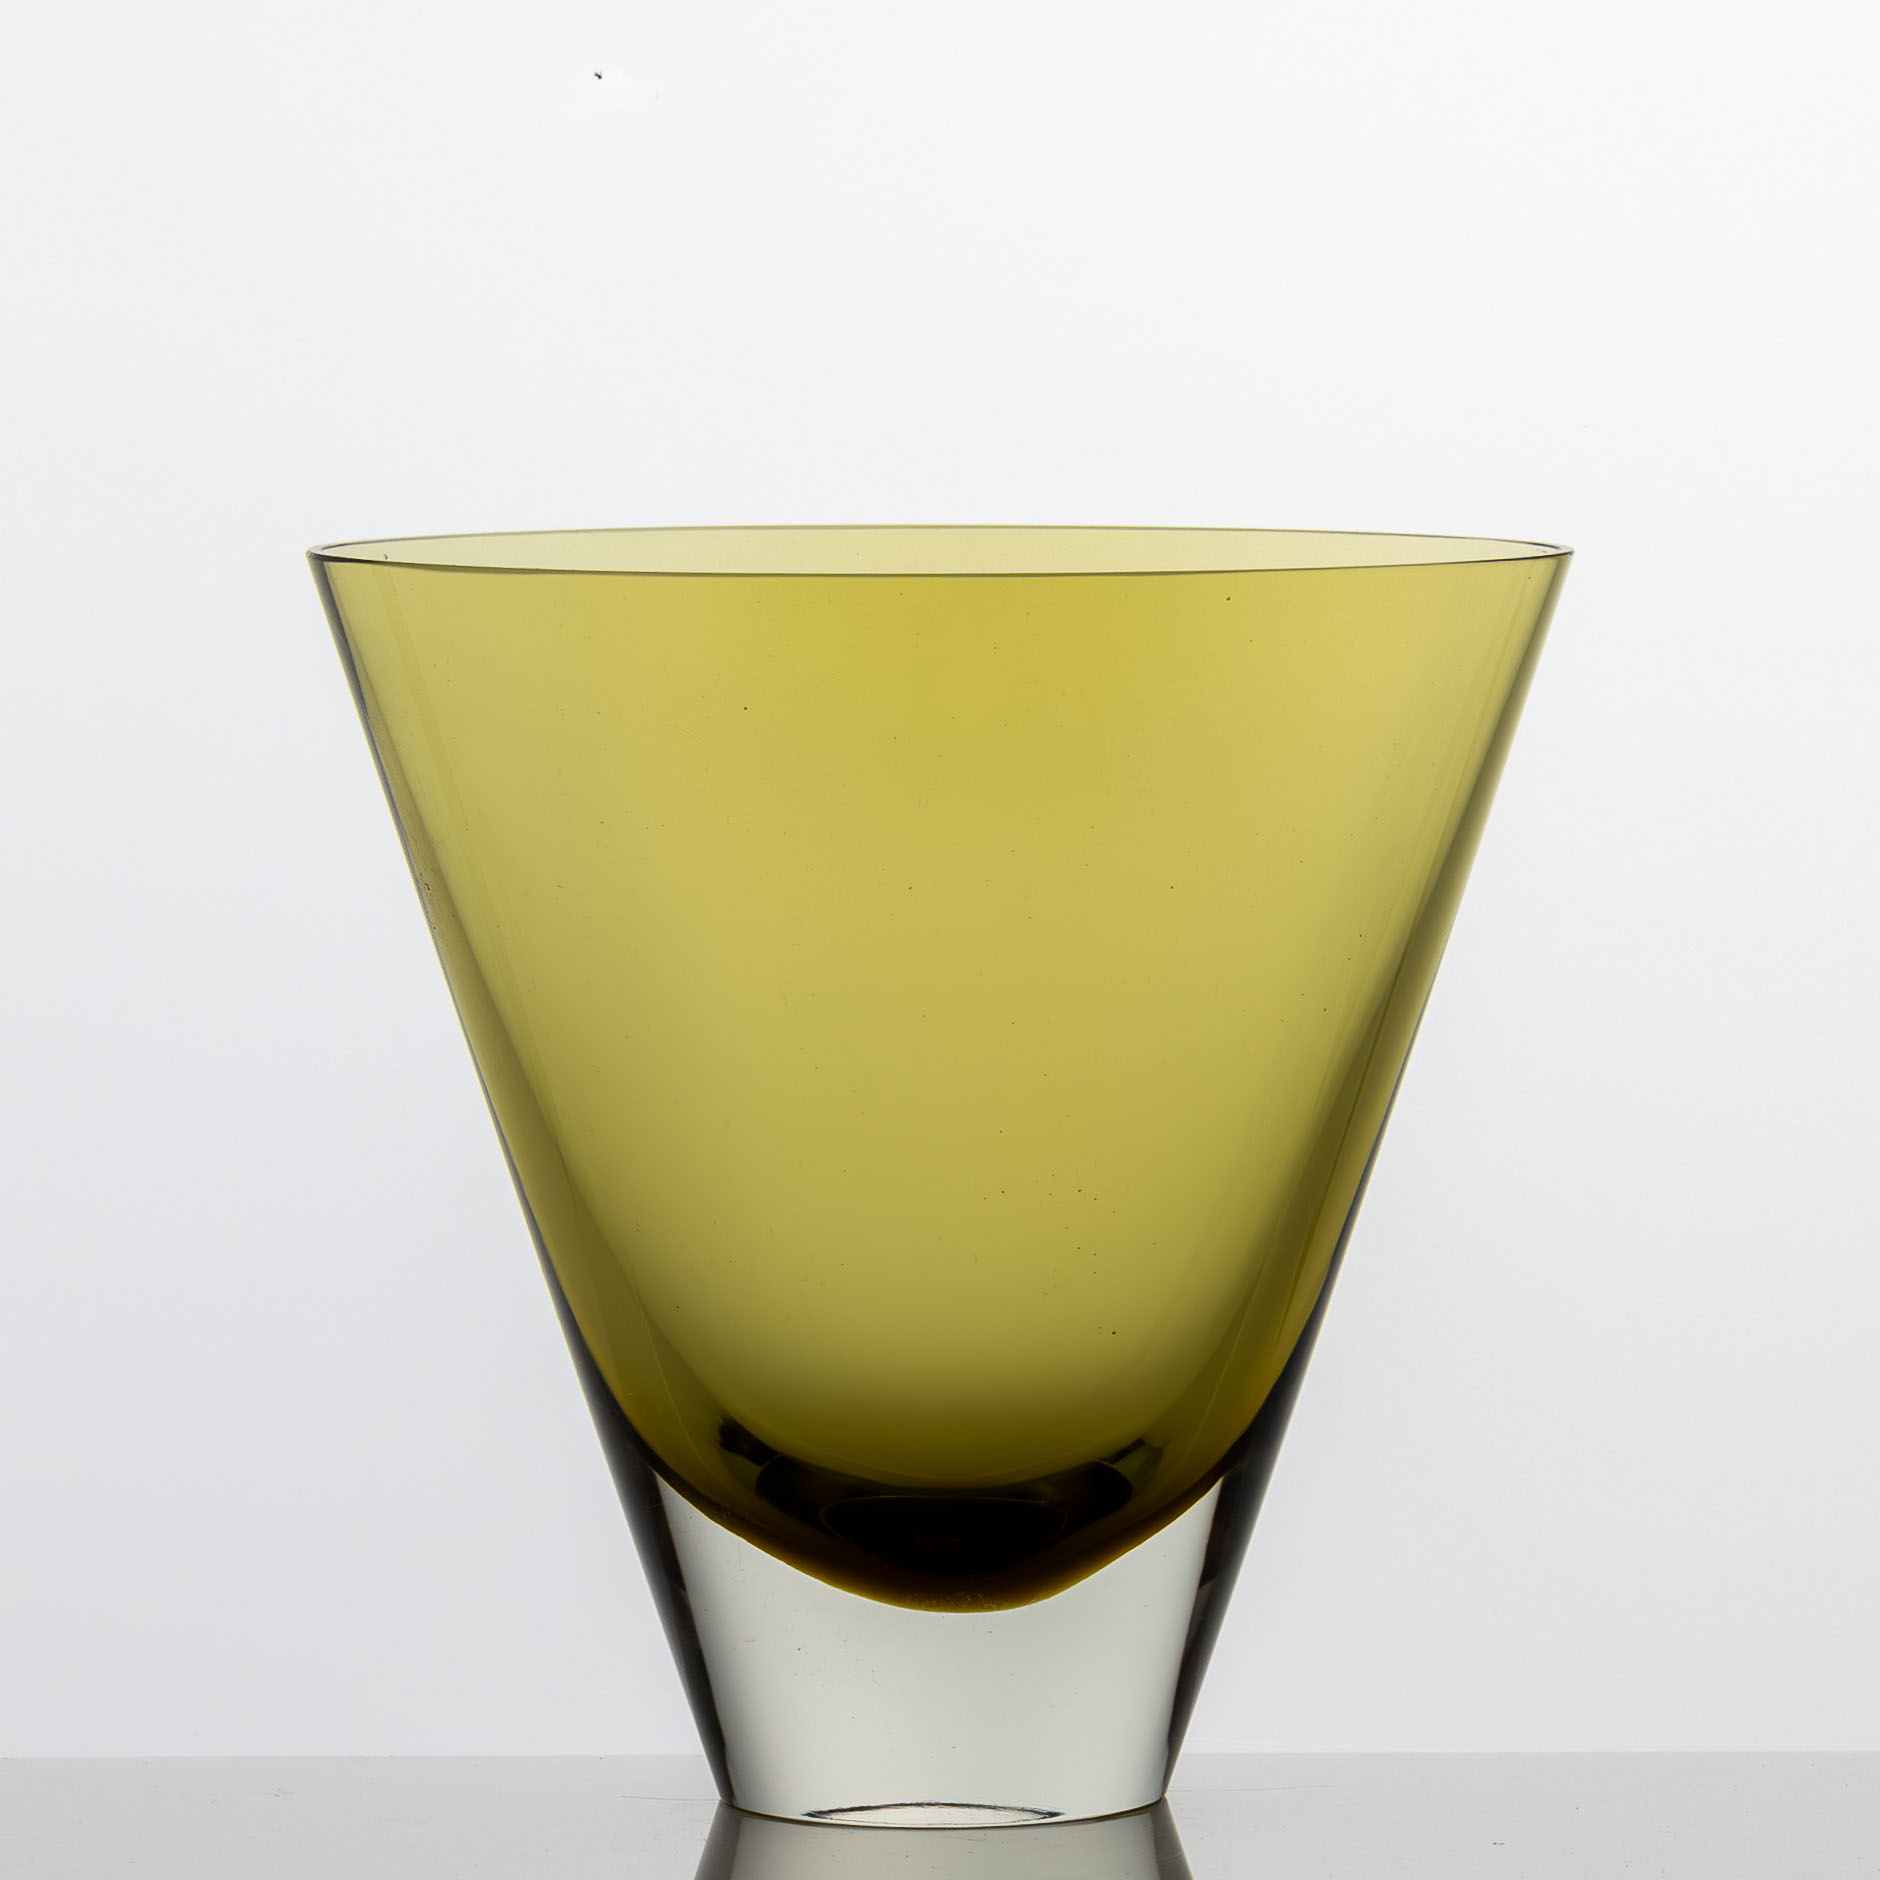 Kaj Franck - Scandinavian modern glass Art-Object, Model KF 234 - Nuutajärvi-Notsjö, Finland 1961